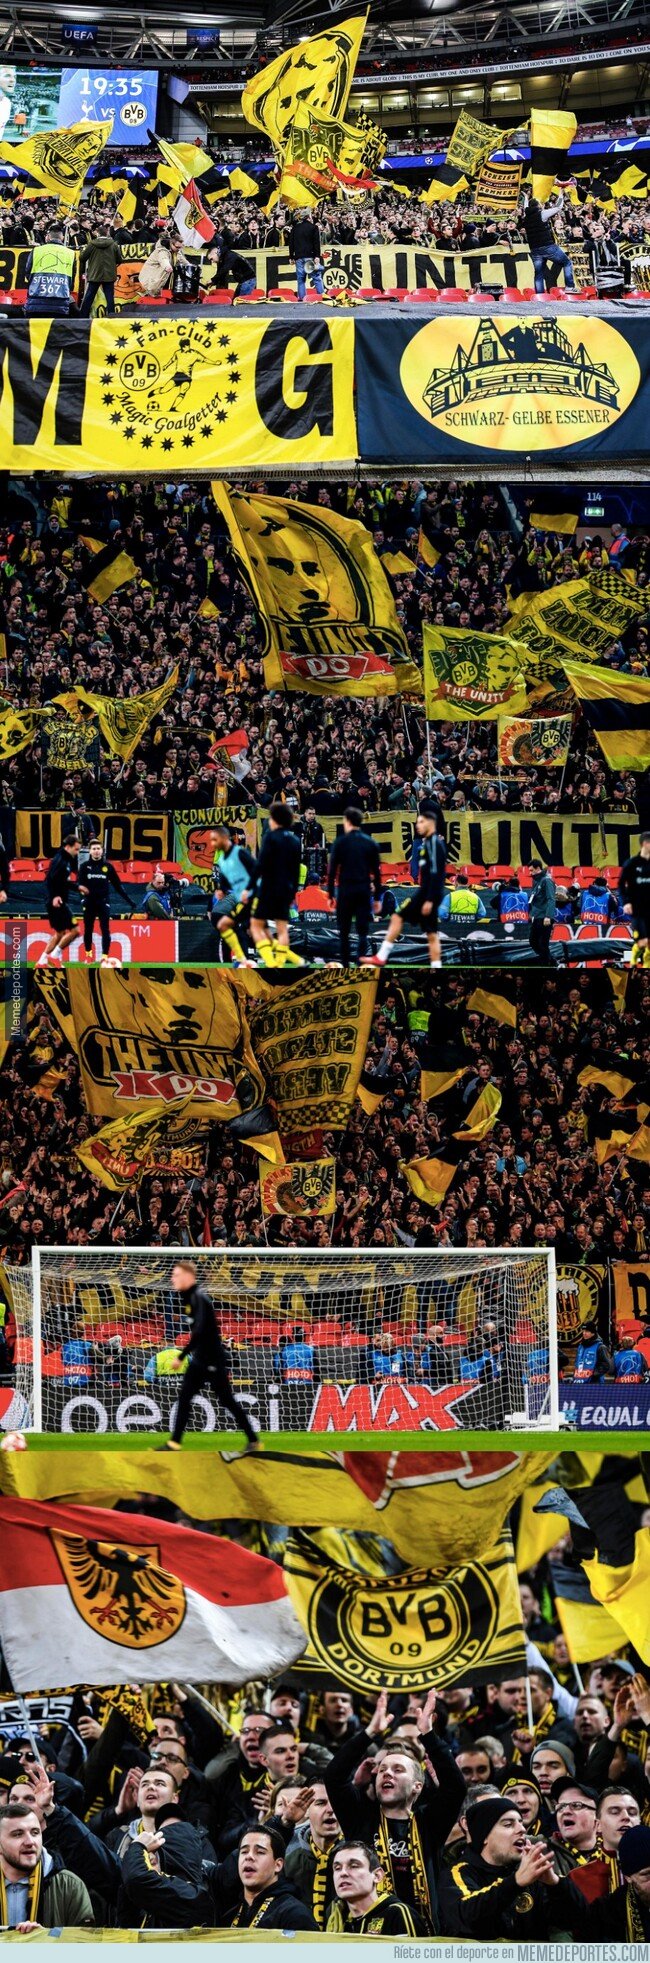 1064385 - Los fans del Dortmund hacen sentir que Wembley sea como su propia casa